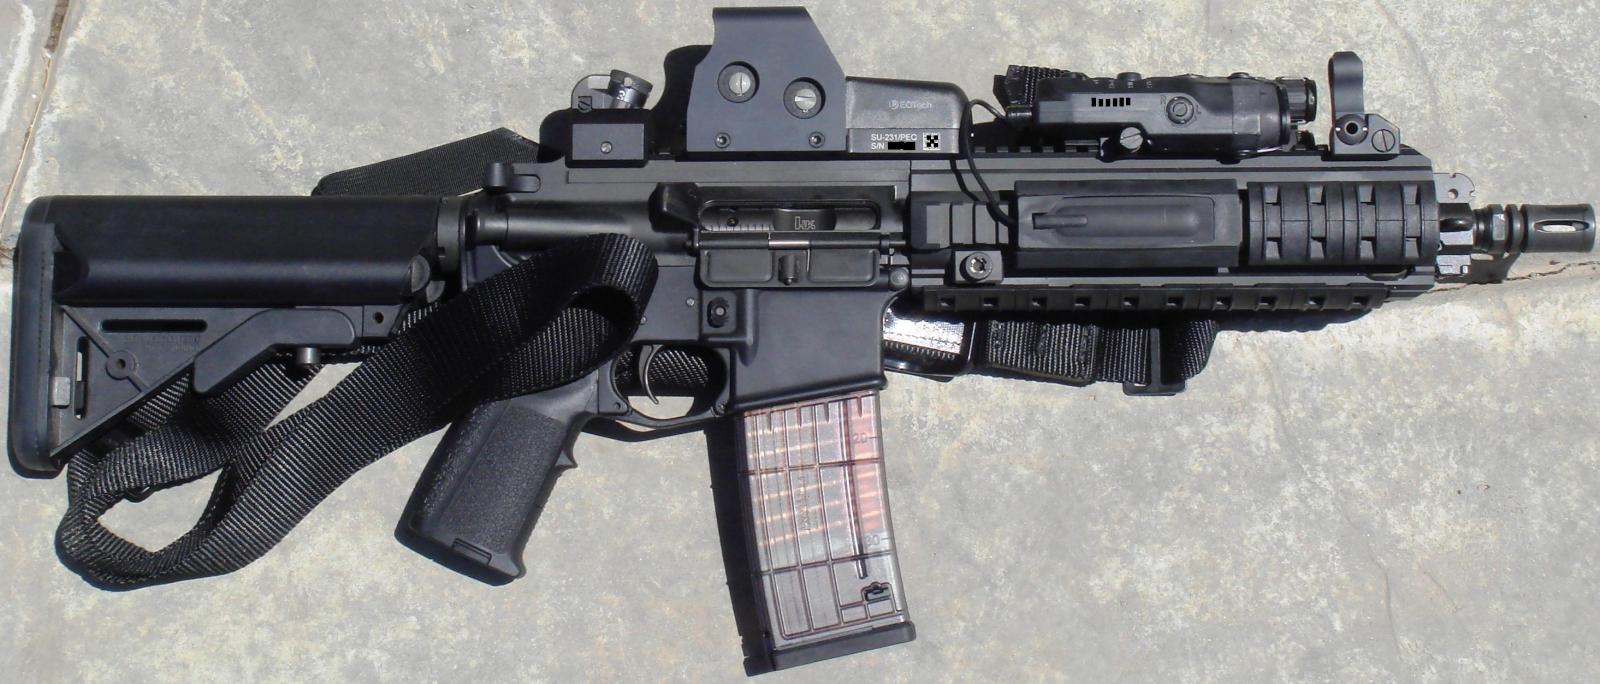 这 些 是 只 更 换 HK416 上 机 匣 后 的 形 态.